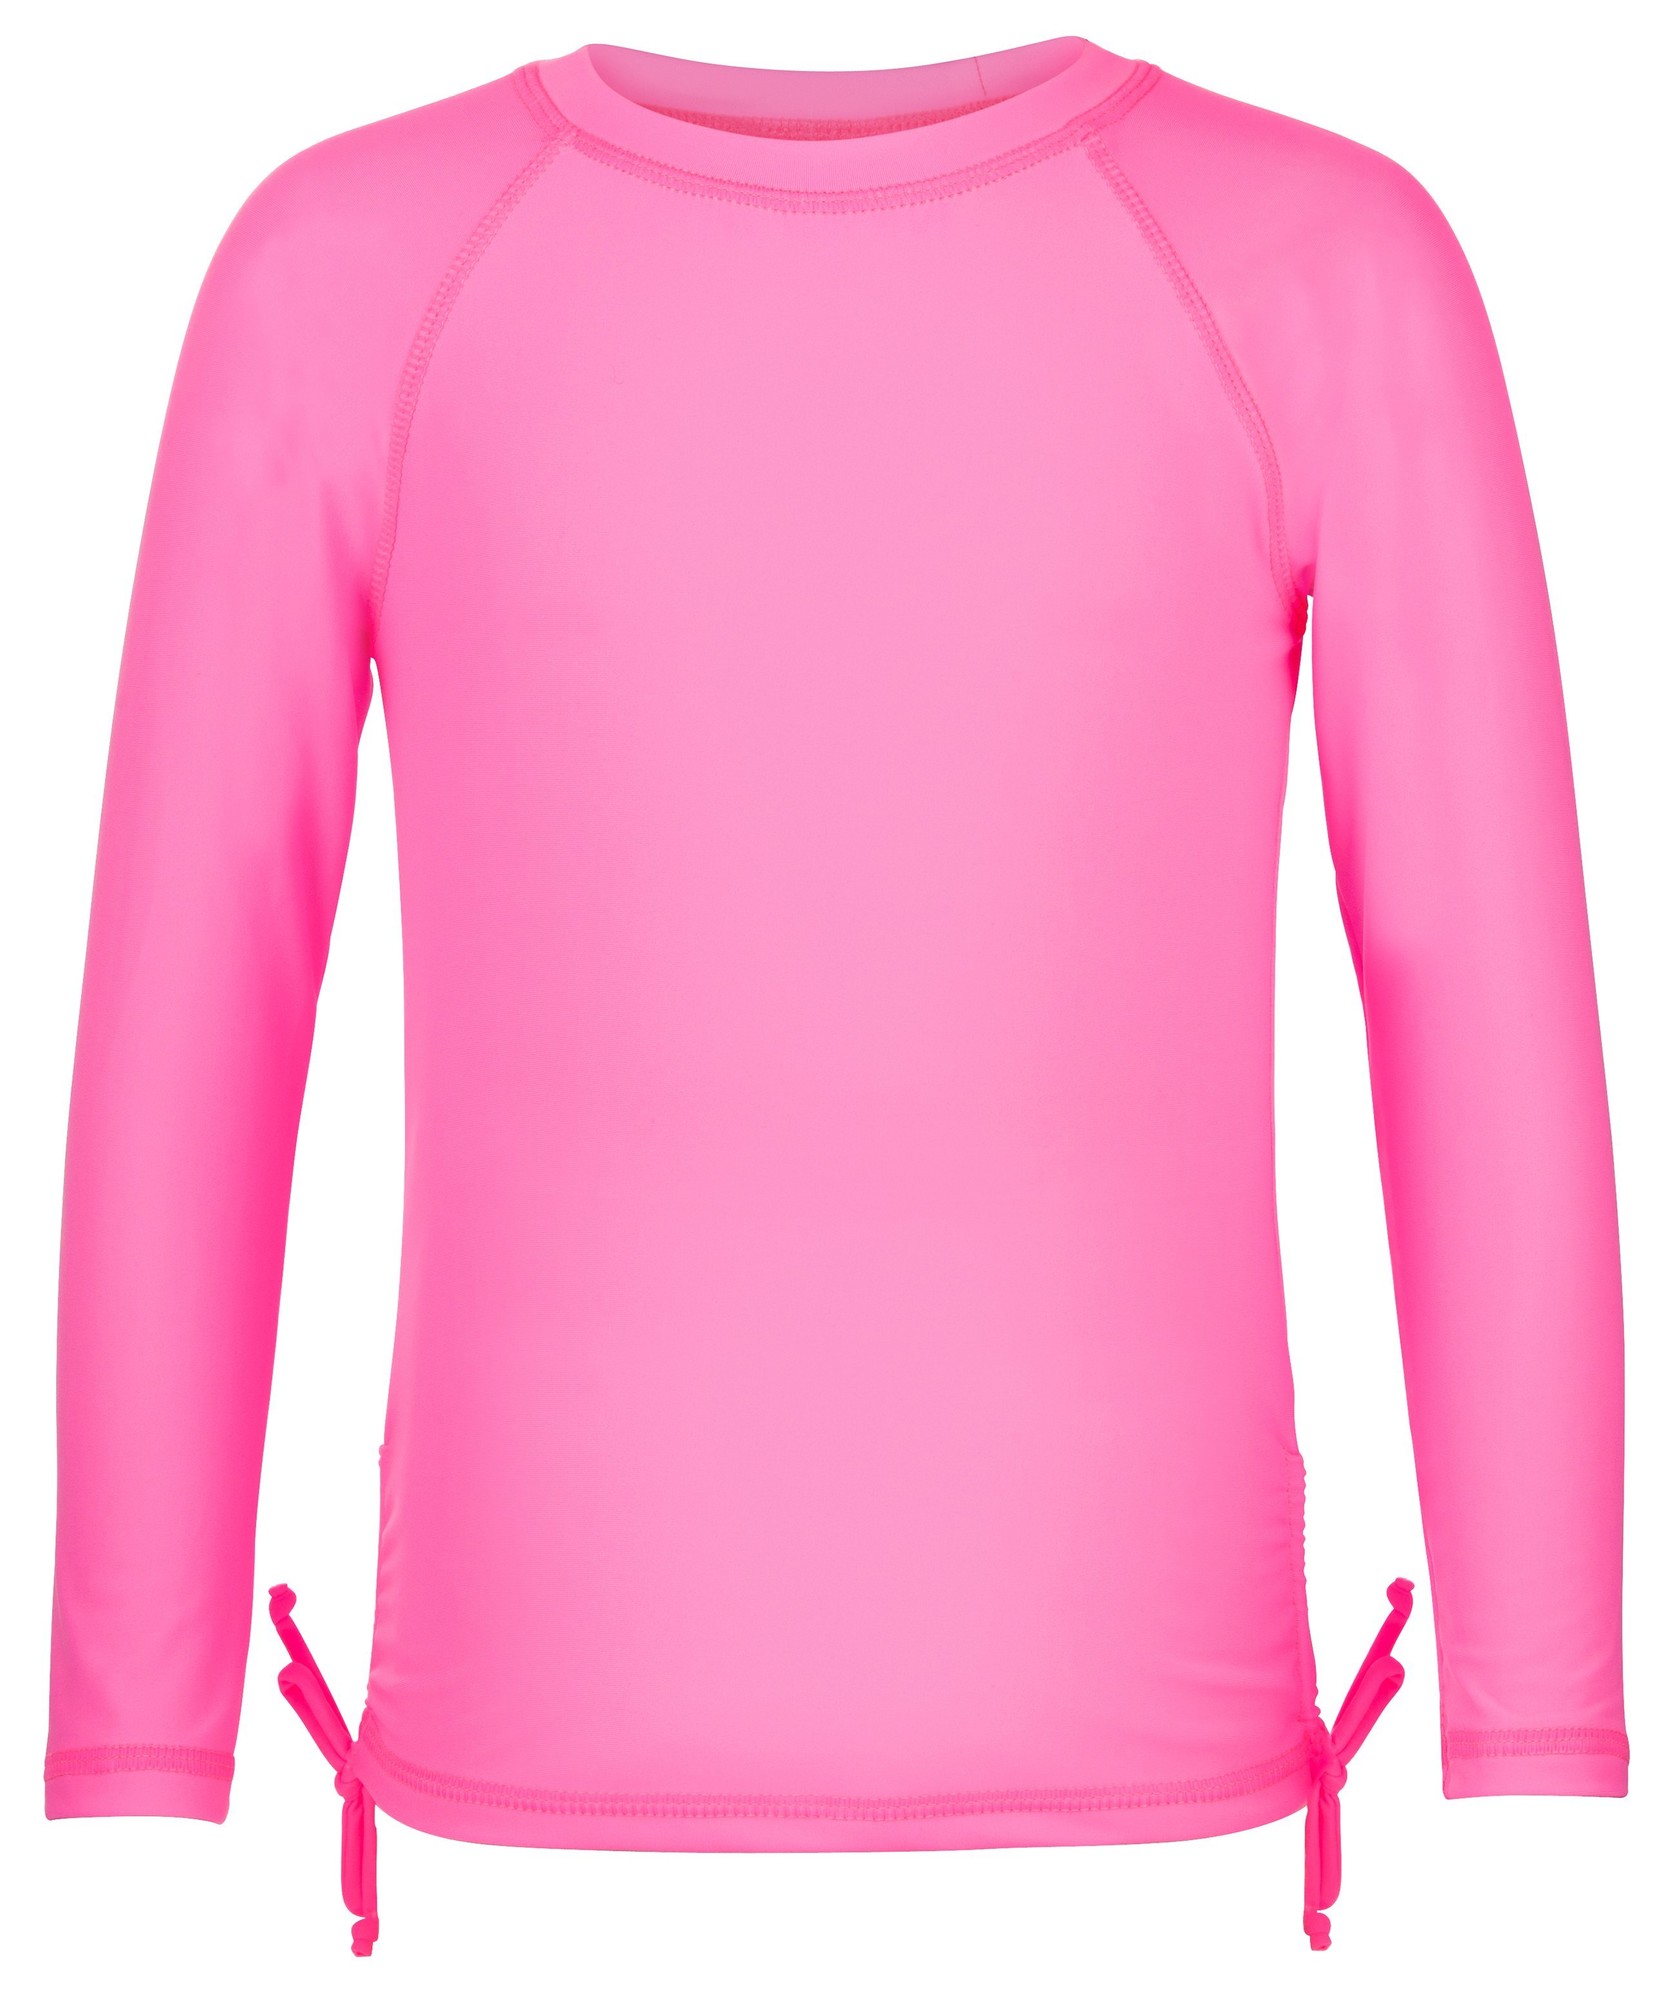 Snapper Rock - UV Langarm Shirt für Mädchen neon pink